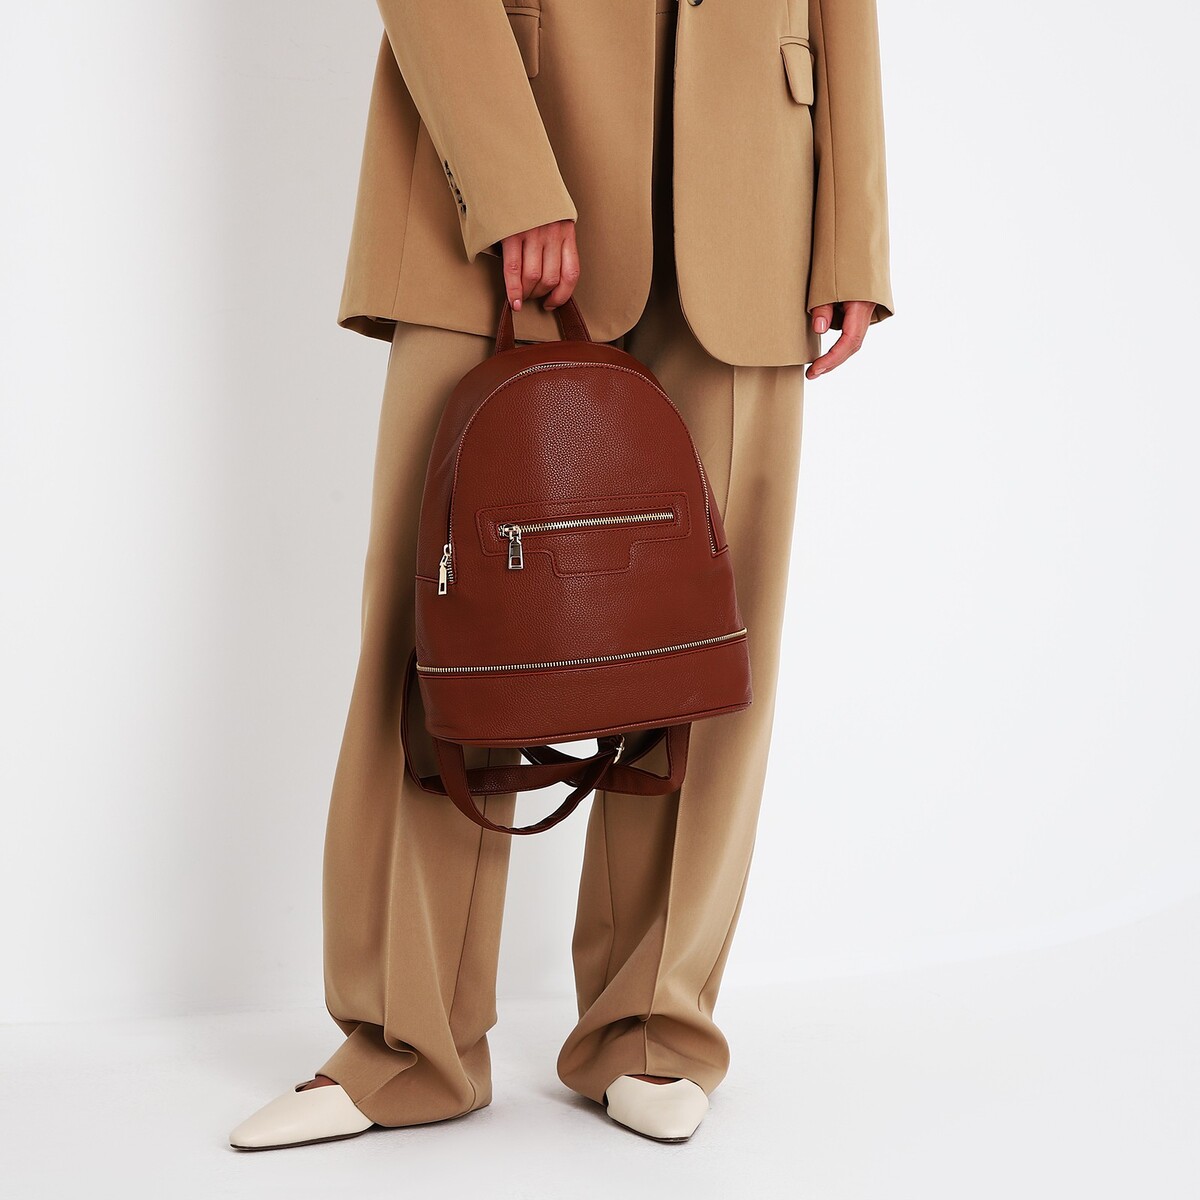 Рюкзак женский из искусственной кожи на молнии, 1 карман, цвет коричневый рюкзак nuovita capcap via marrone коричневый